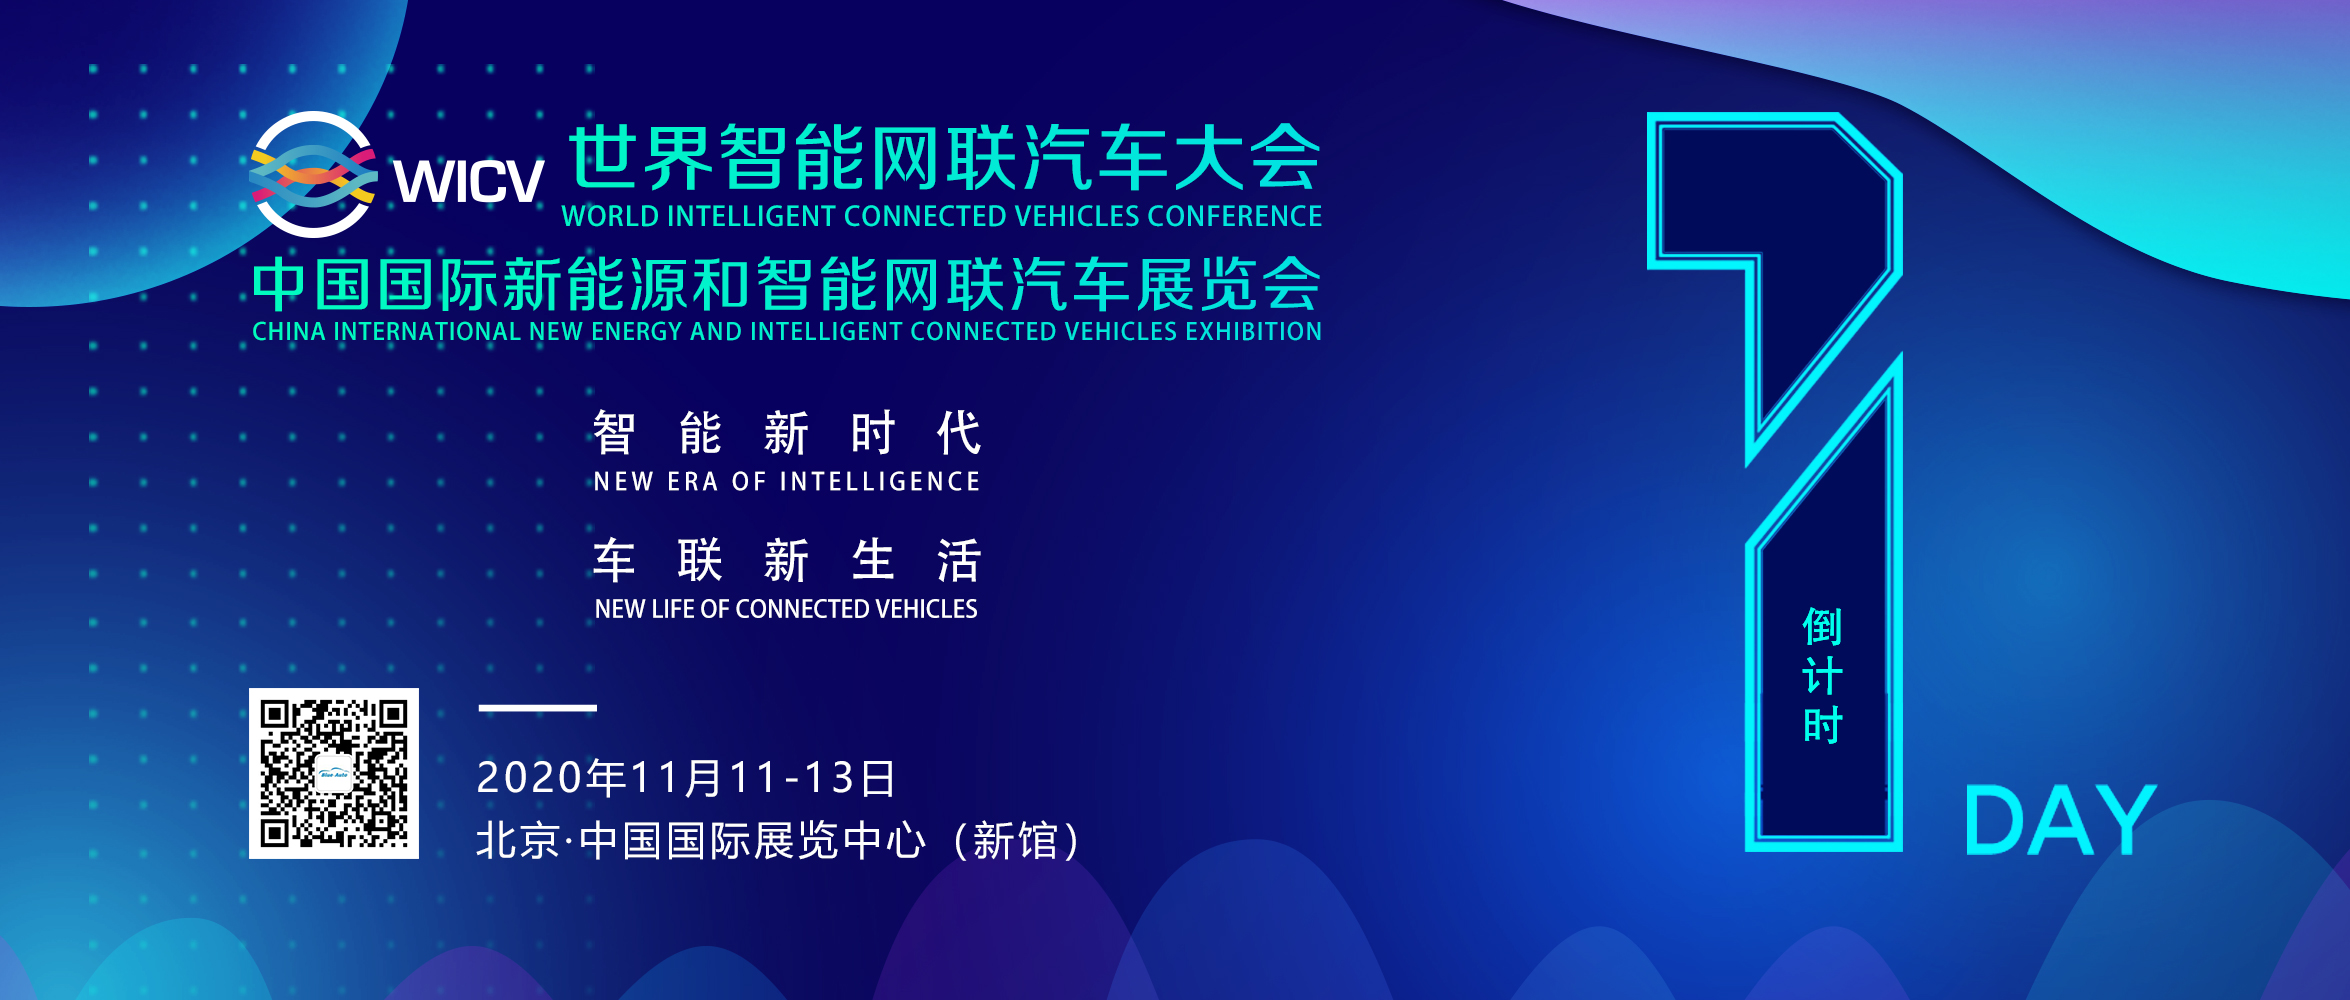 线下线上齐亮相，“2020世界智能网联汽车大会”明日在京开幕_世界智能网联汽车大会暨中国国际新能源和智能网联汽车展览会